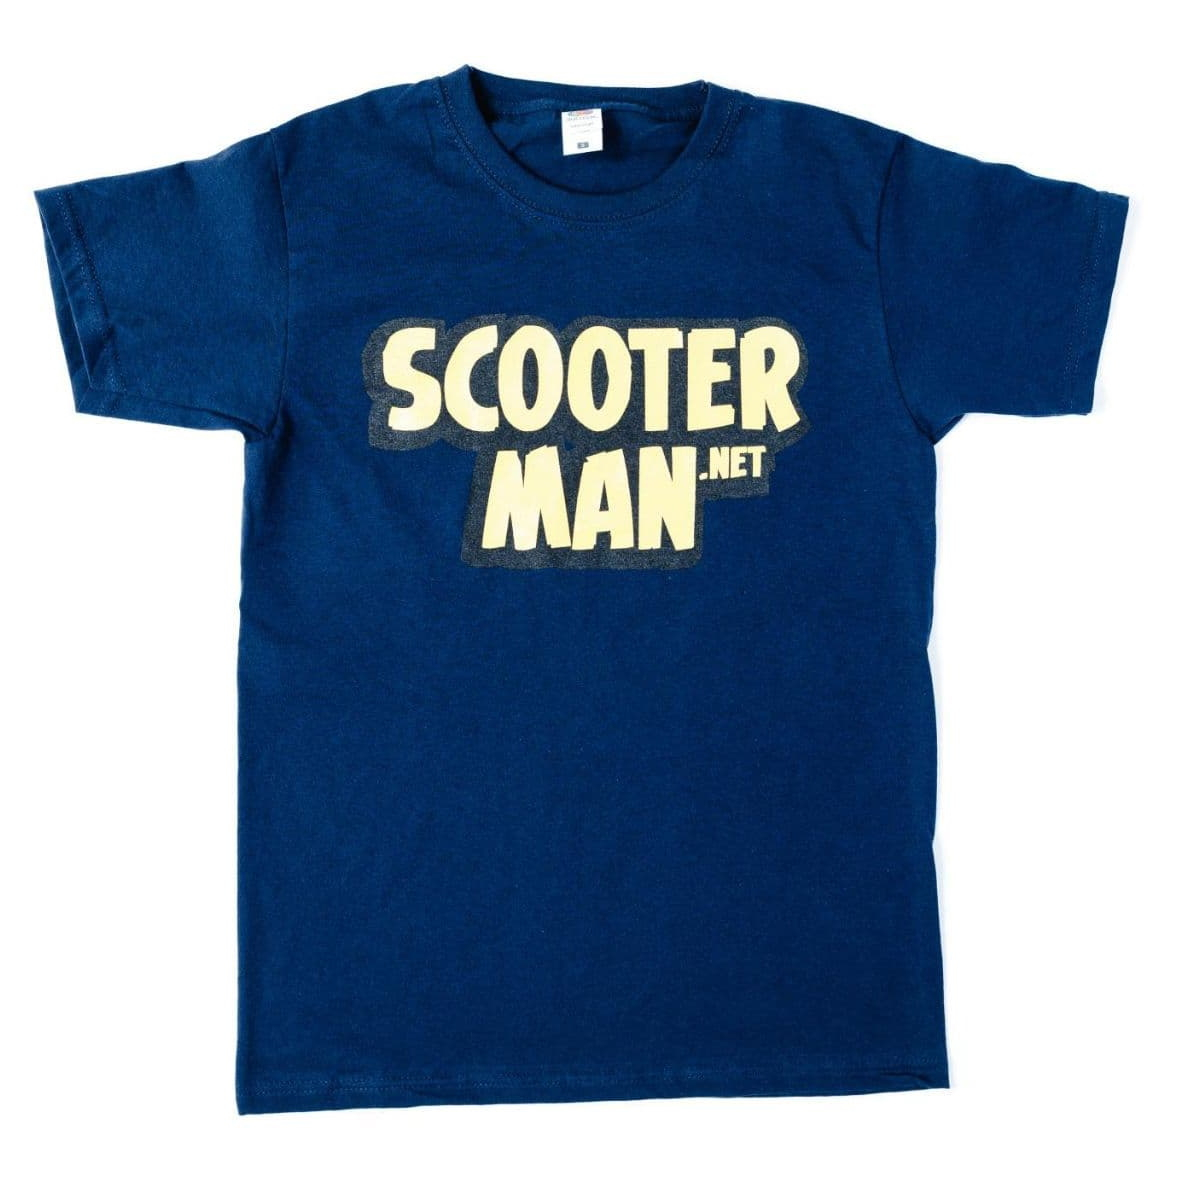 Scooterman.net T-shirt